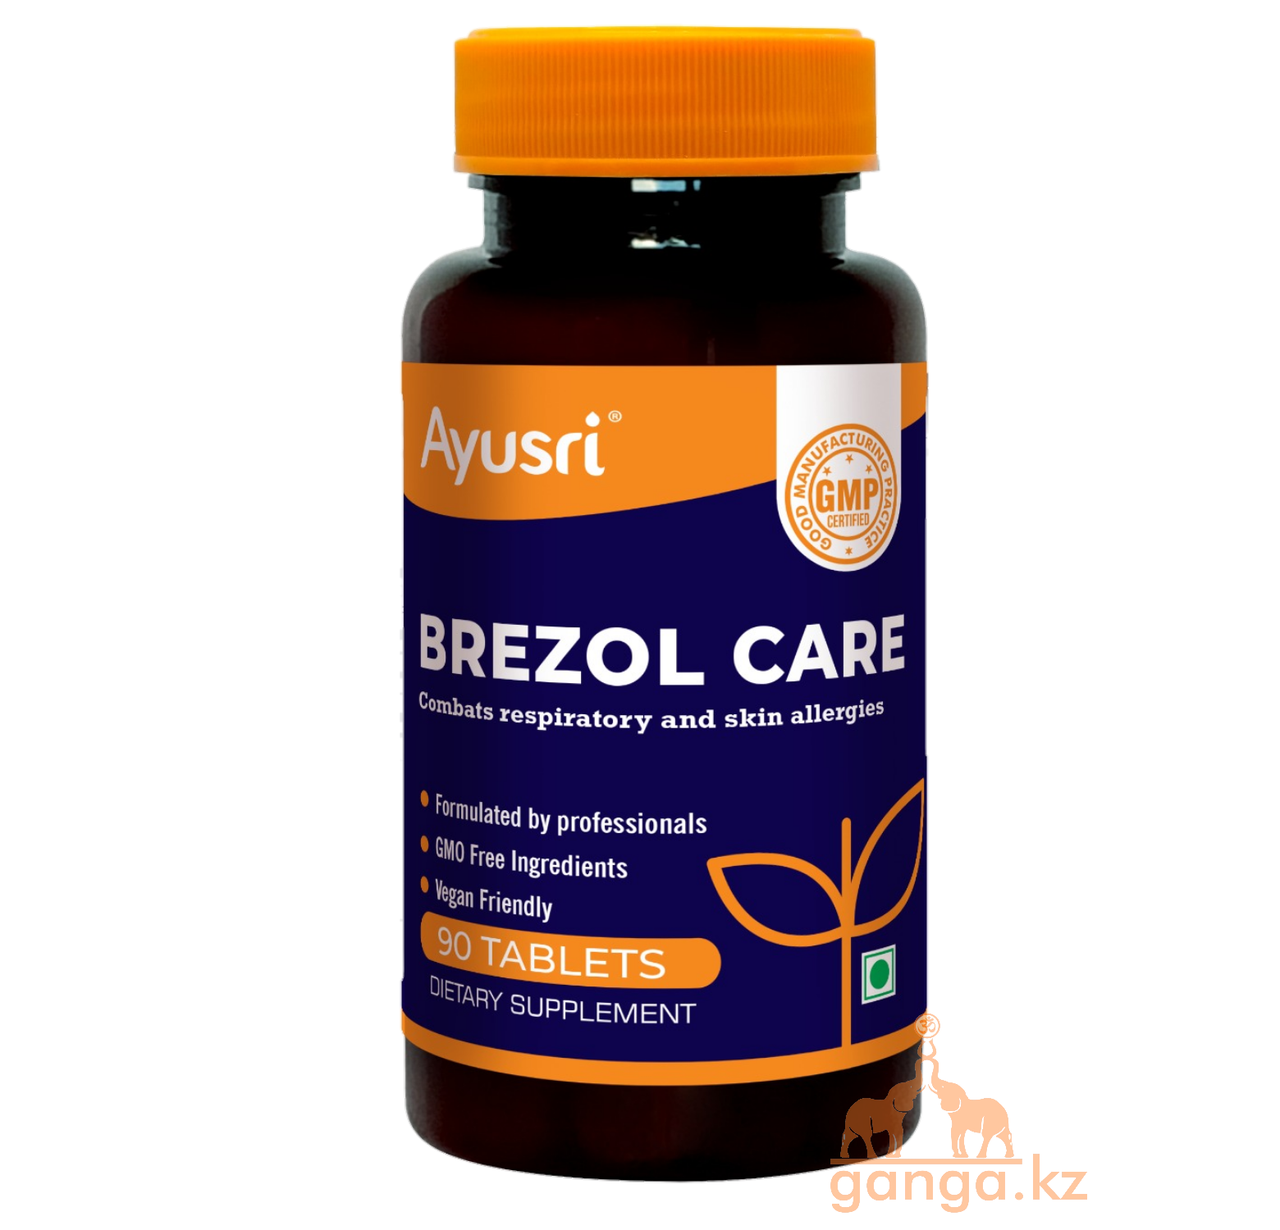 Бризоль кейр при заболеваниях дыхательных путей (Bresol care AYUSRI), 90 таб